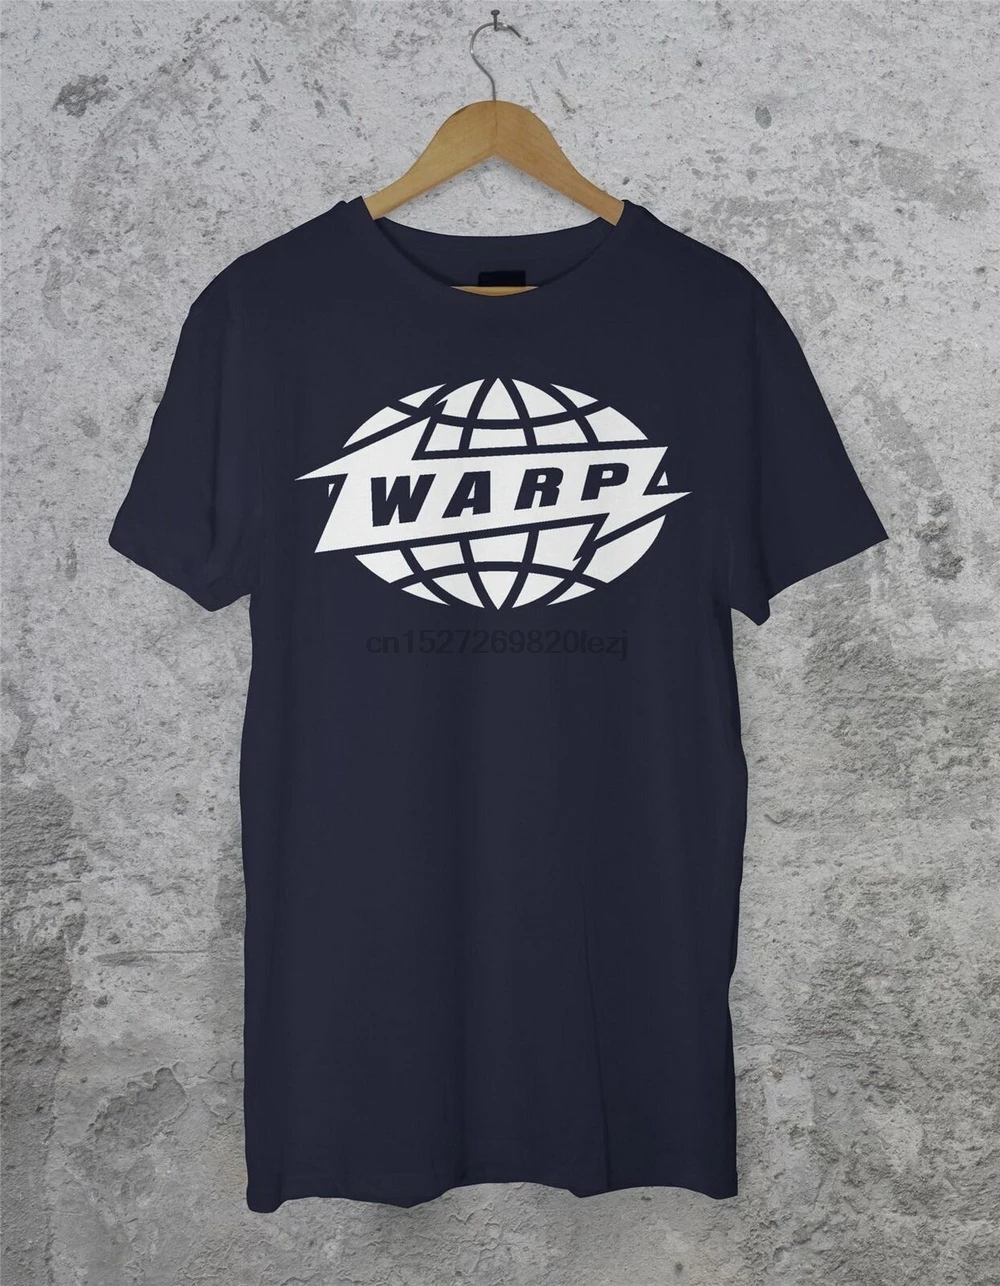 Фото Warp записей Футболка Aphex Twin Edm электро электронная музыкальная летняя футболка с